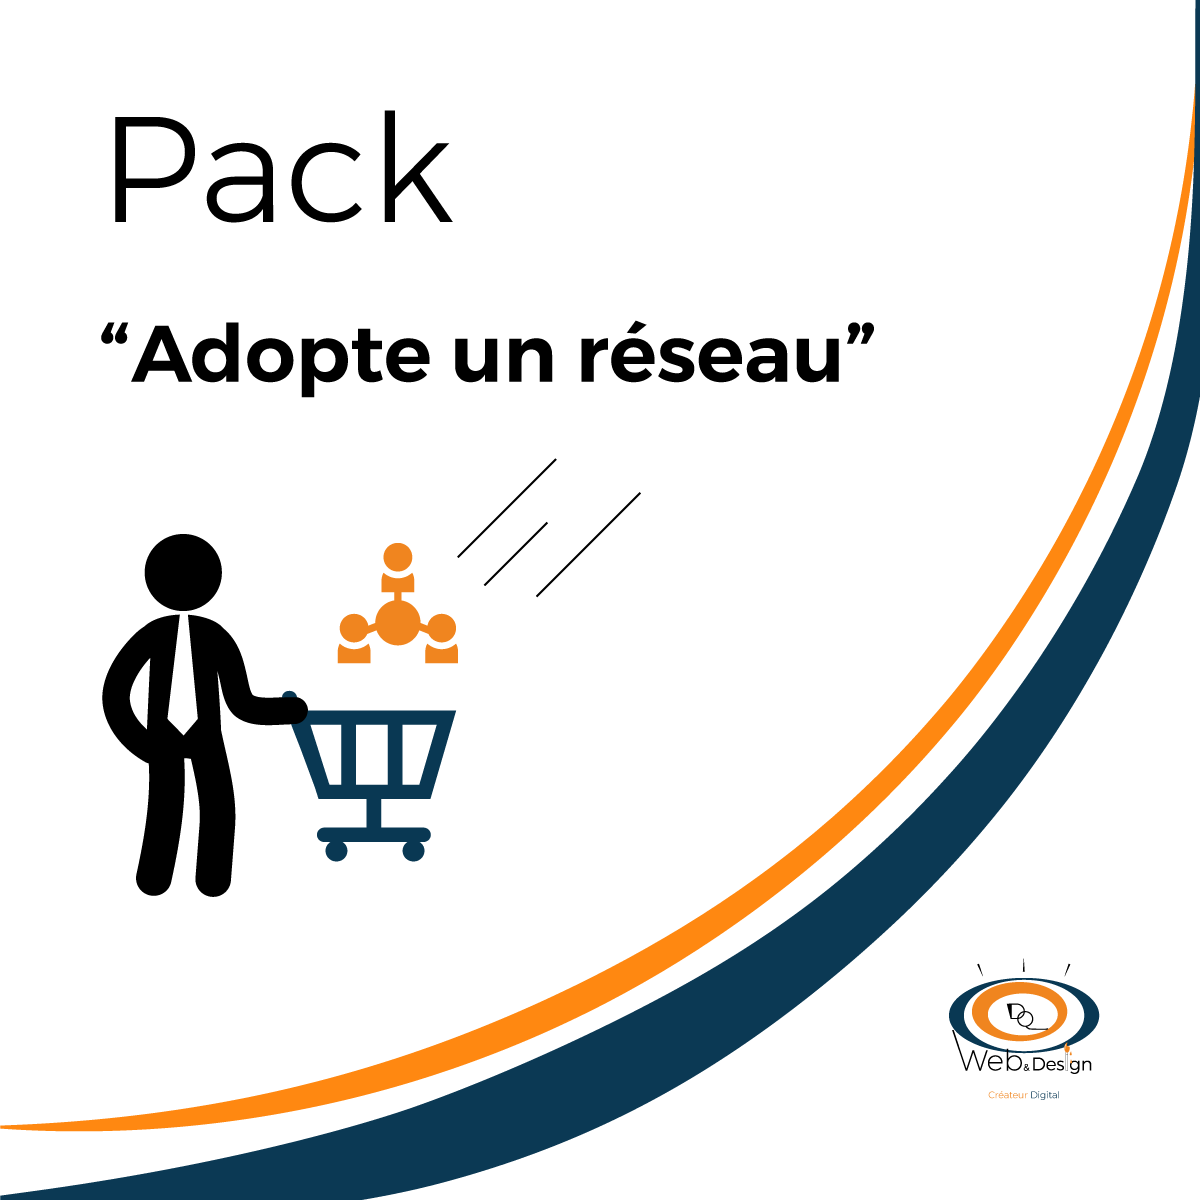 Pack “Adopte un réseau“